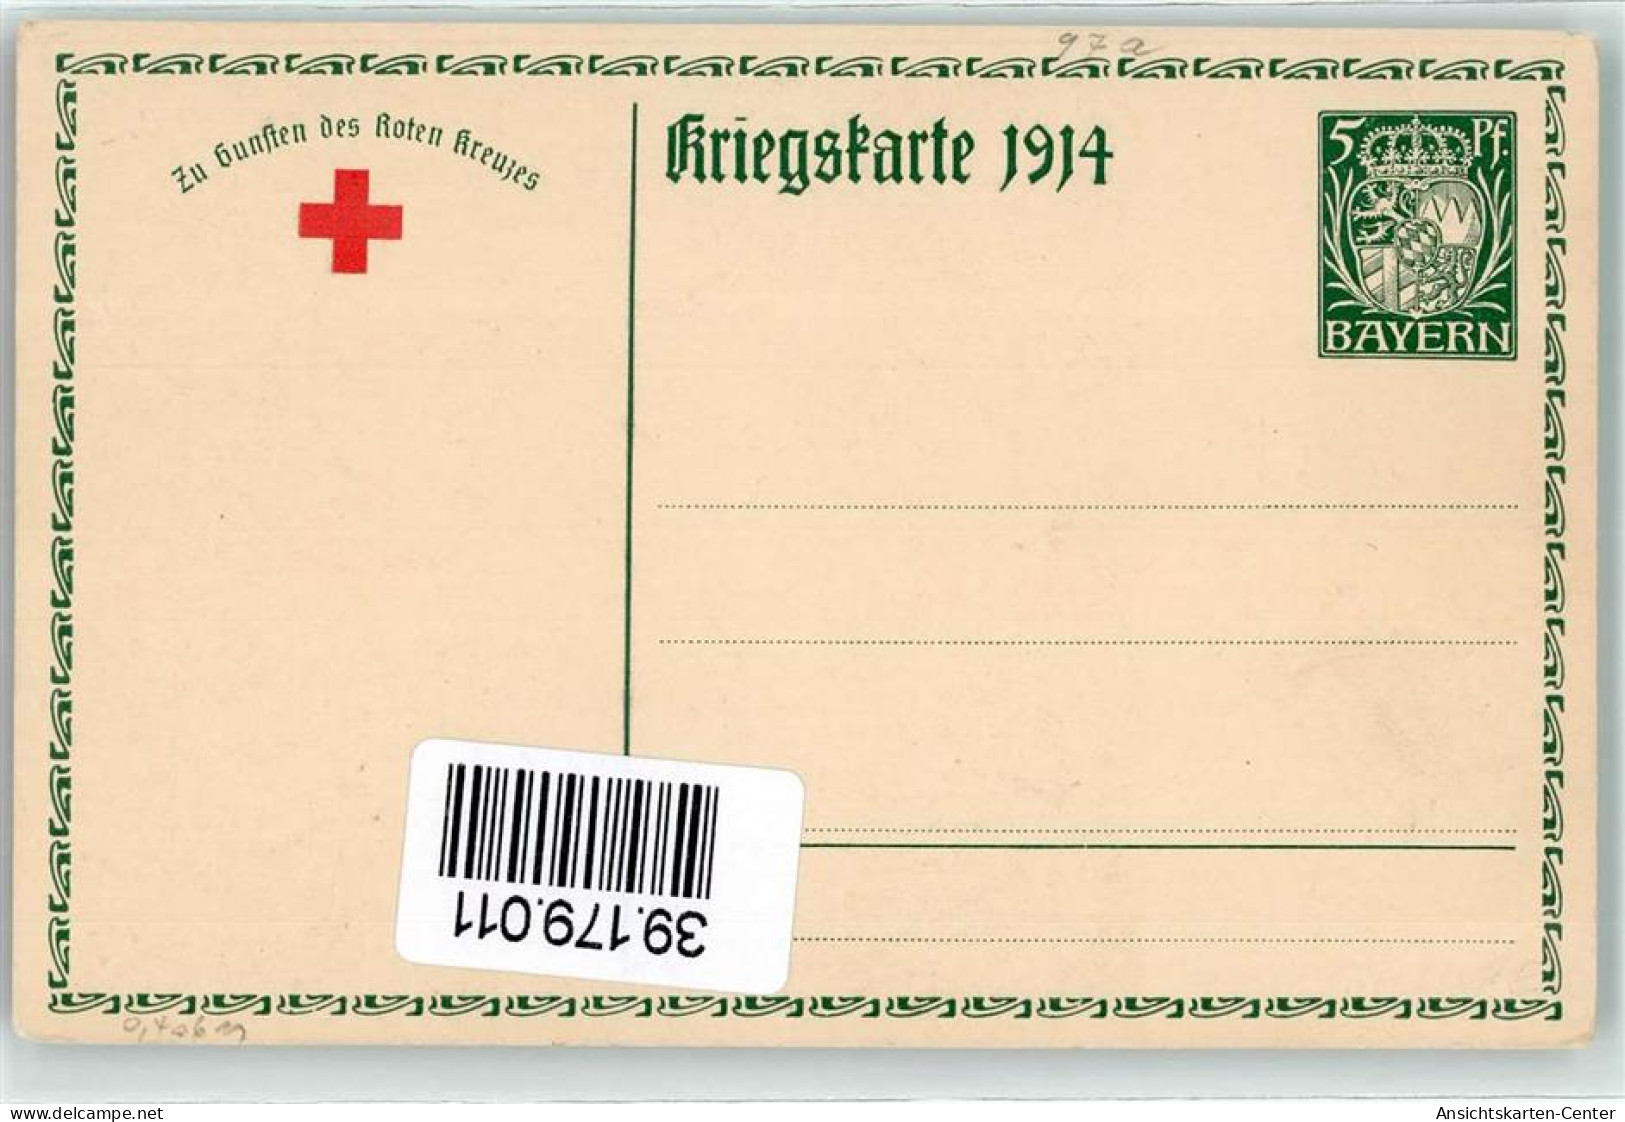 39179011 - Ludwig III Koenig Von Bayern  Gemaelde Von Firle Faksimile Unterschrift  AK - Postcards